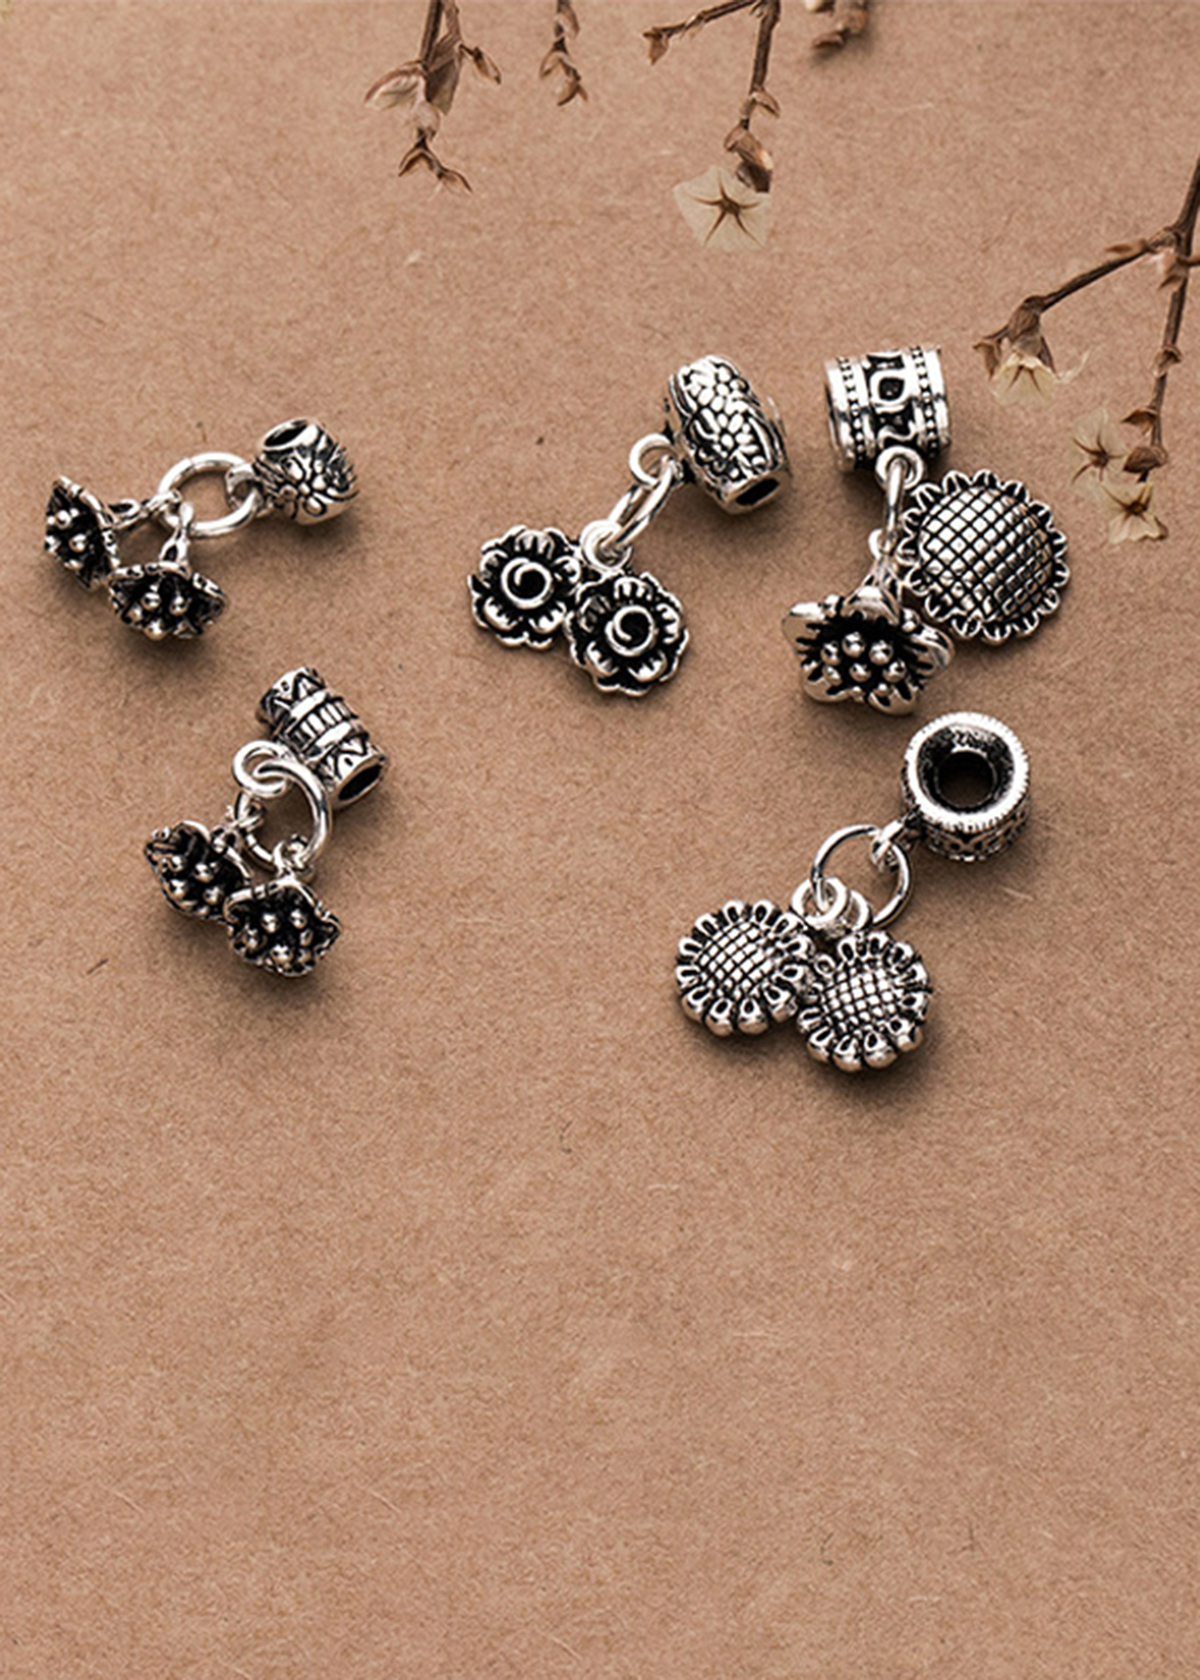 Charm bạc hình hoa hướng dương đôi 4 - Ngọc Quý Gemstones